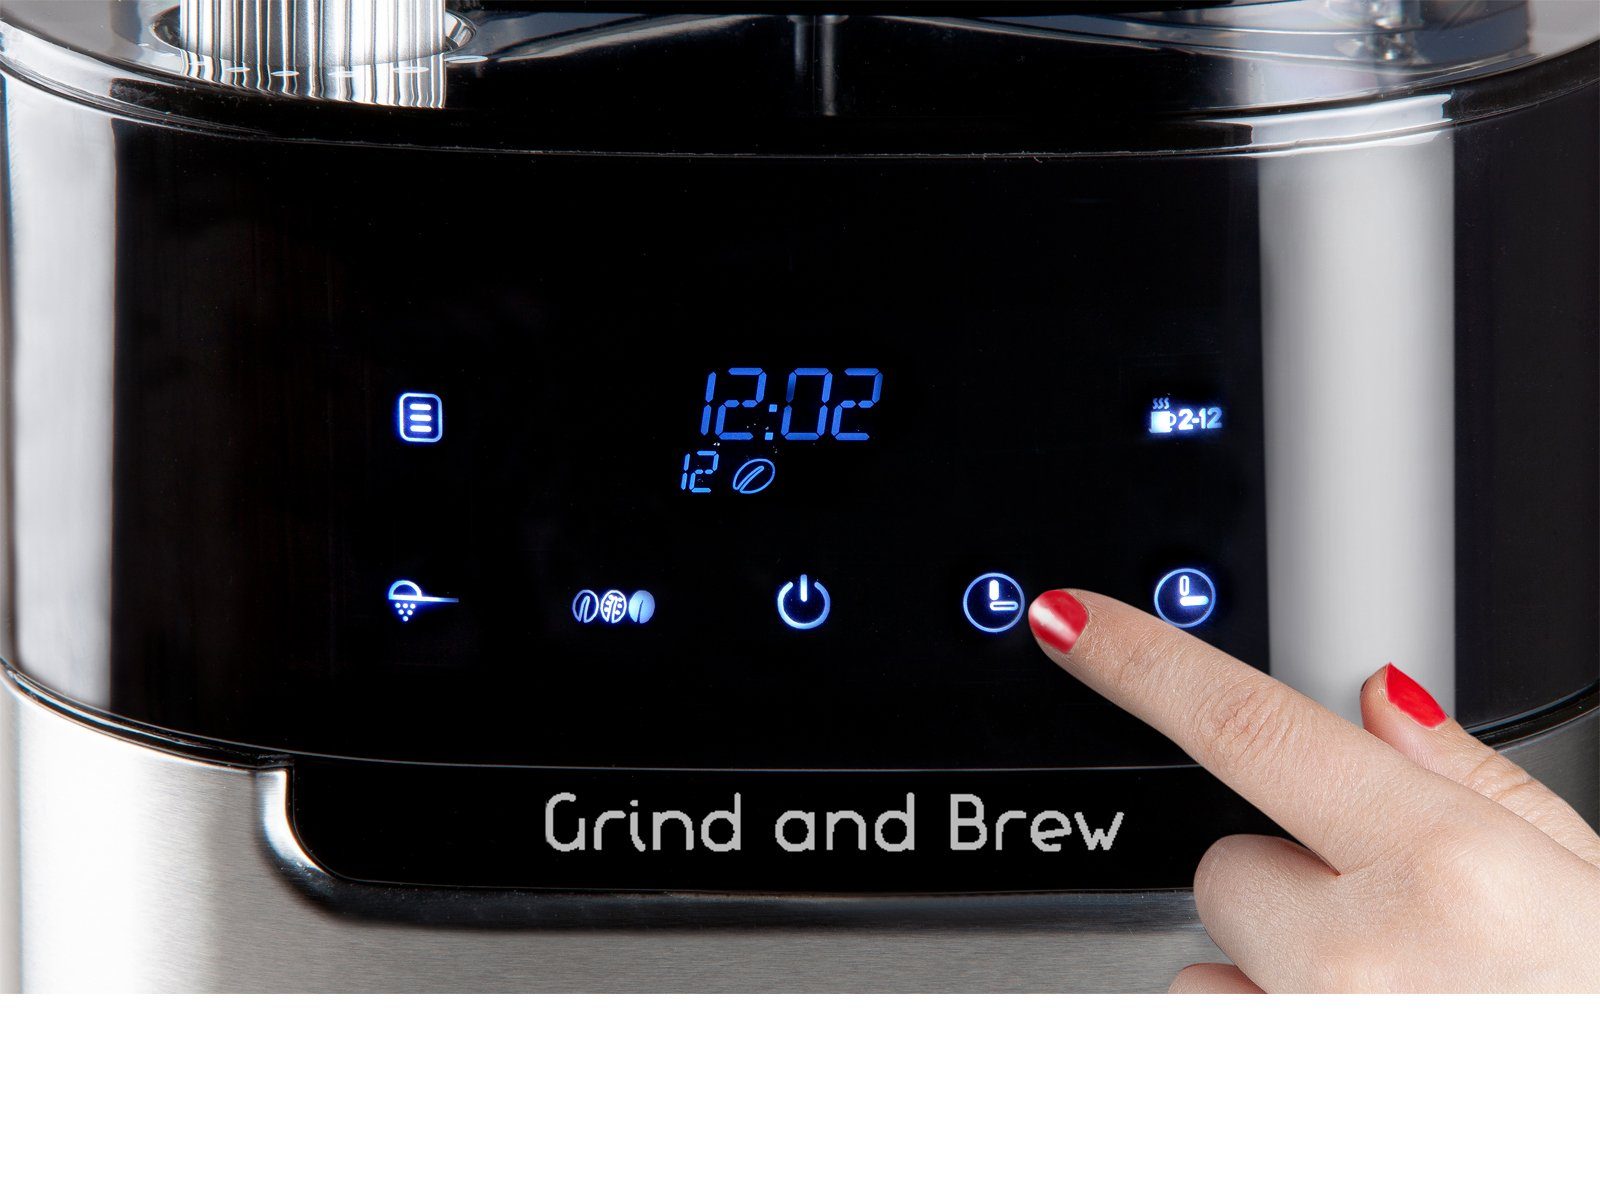 Timer Tassen für & Domo Pulver mit geeignet Bohnen, Filterkaffeemaschine, Mahlwerk Glaskanne 12